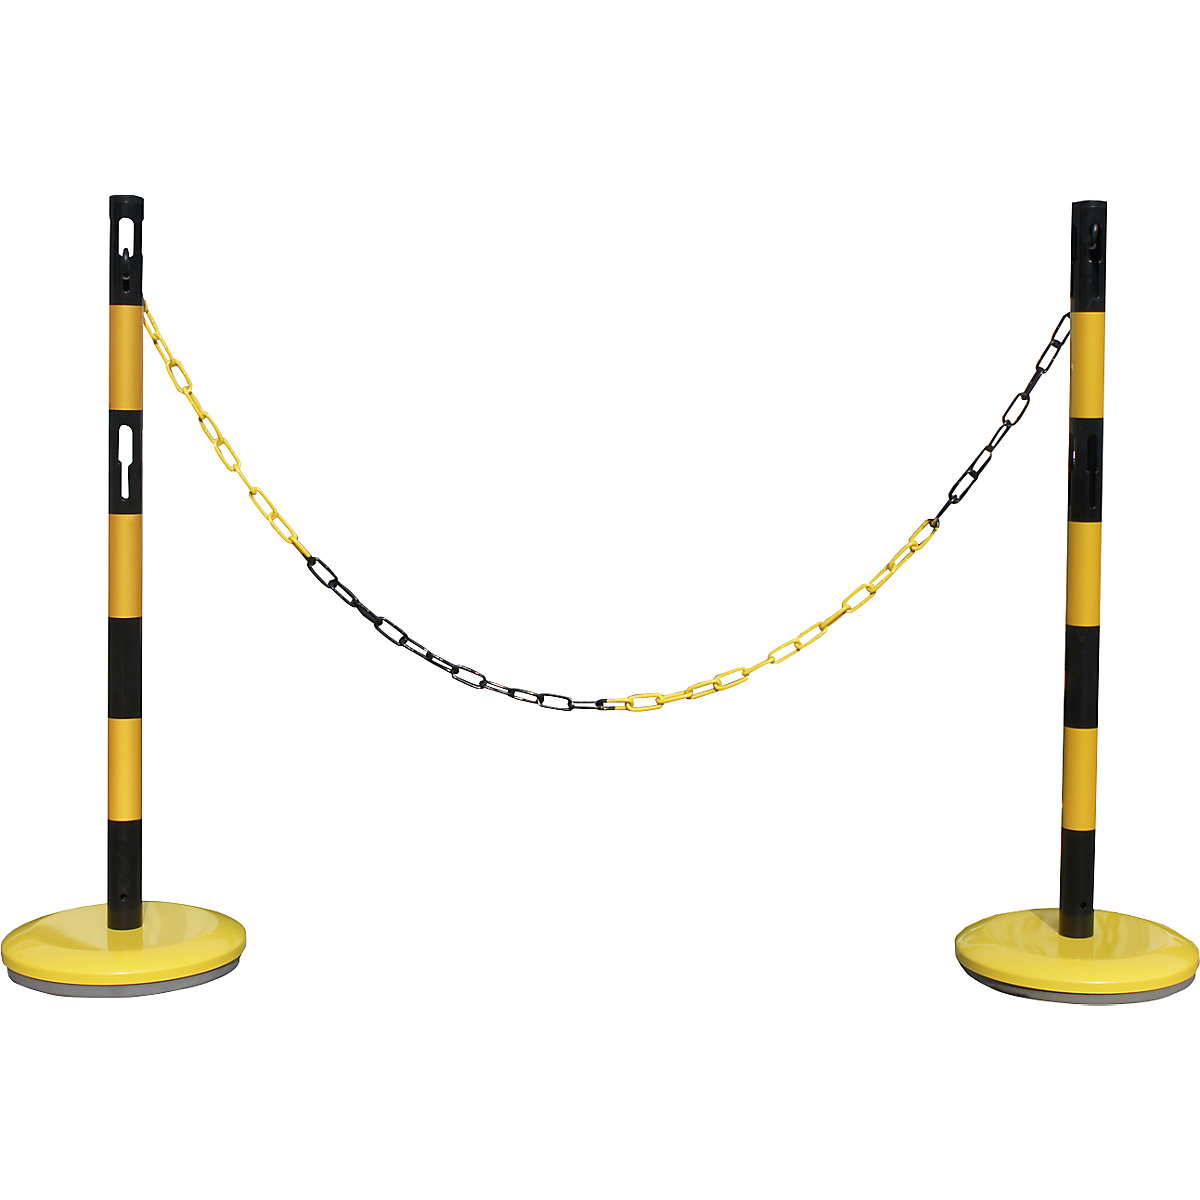 Sada zahrazovacích sloupků s řetězem – VISO, 2 sloupky, řetěz 2,5 m, žlutá / černá-5